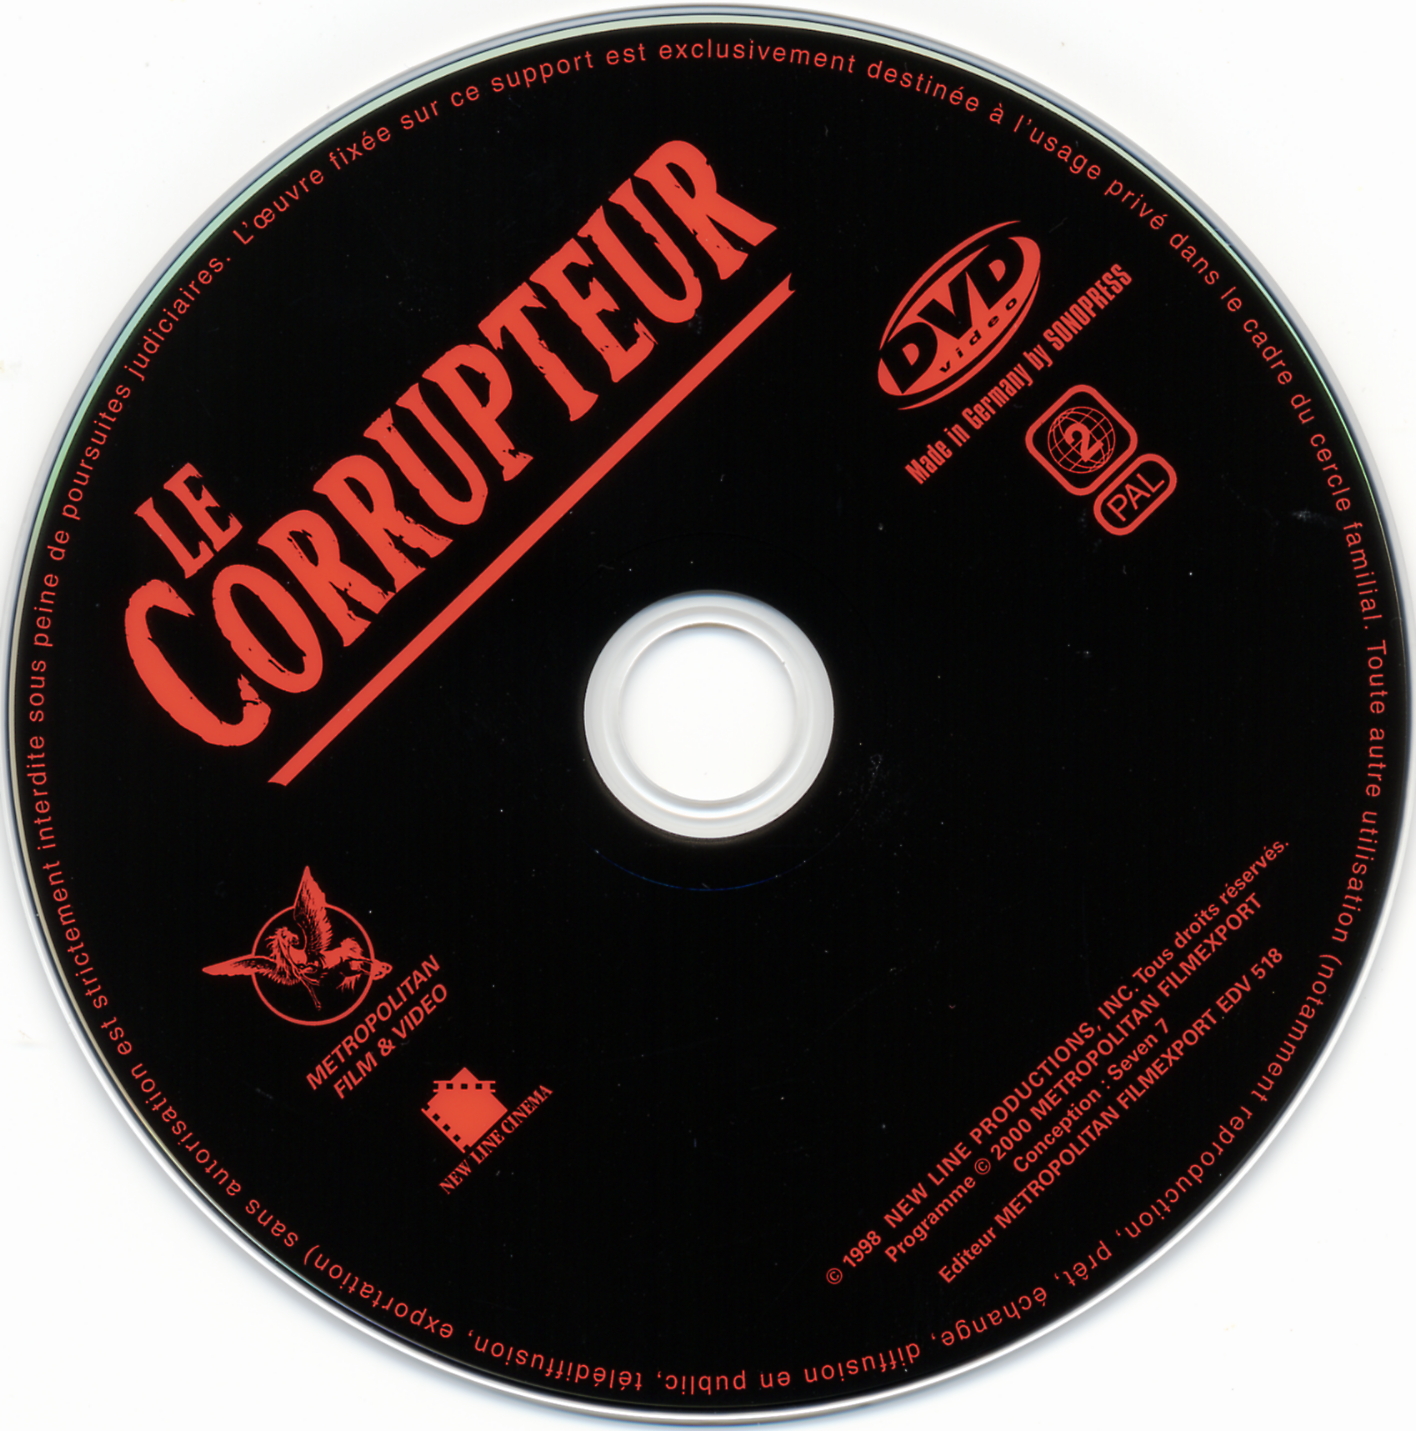 Le corrupteur